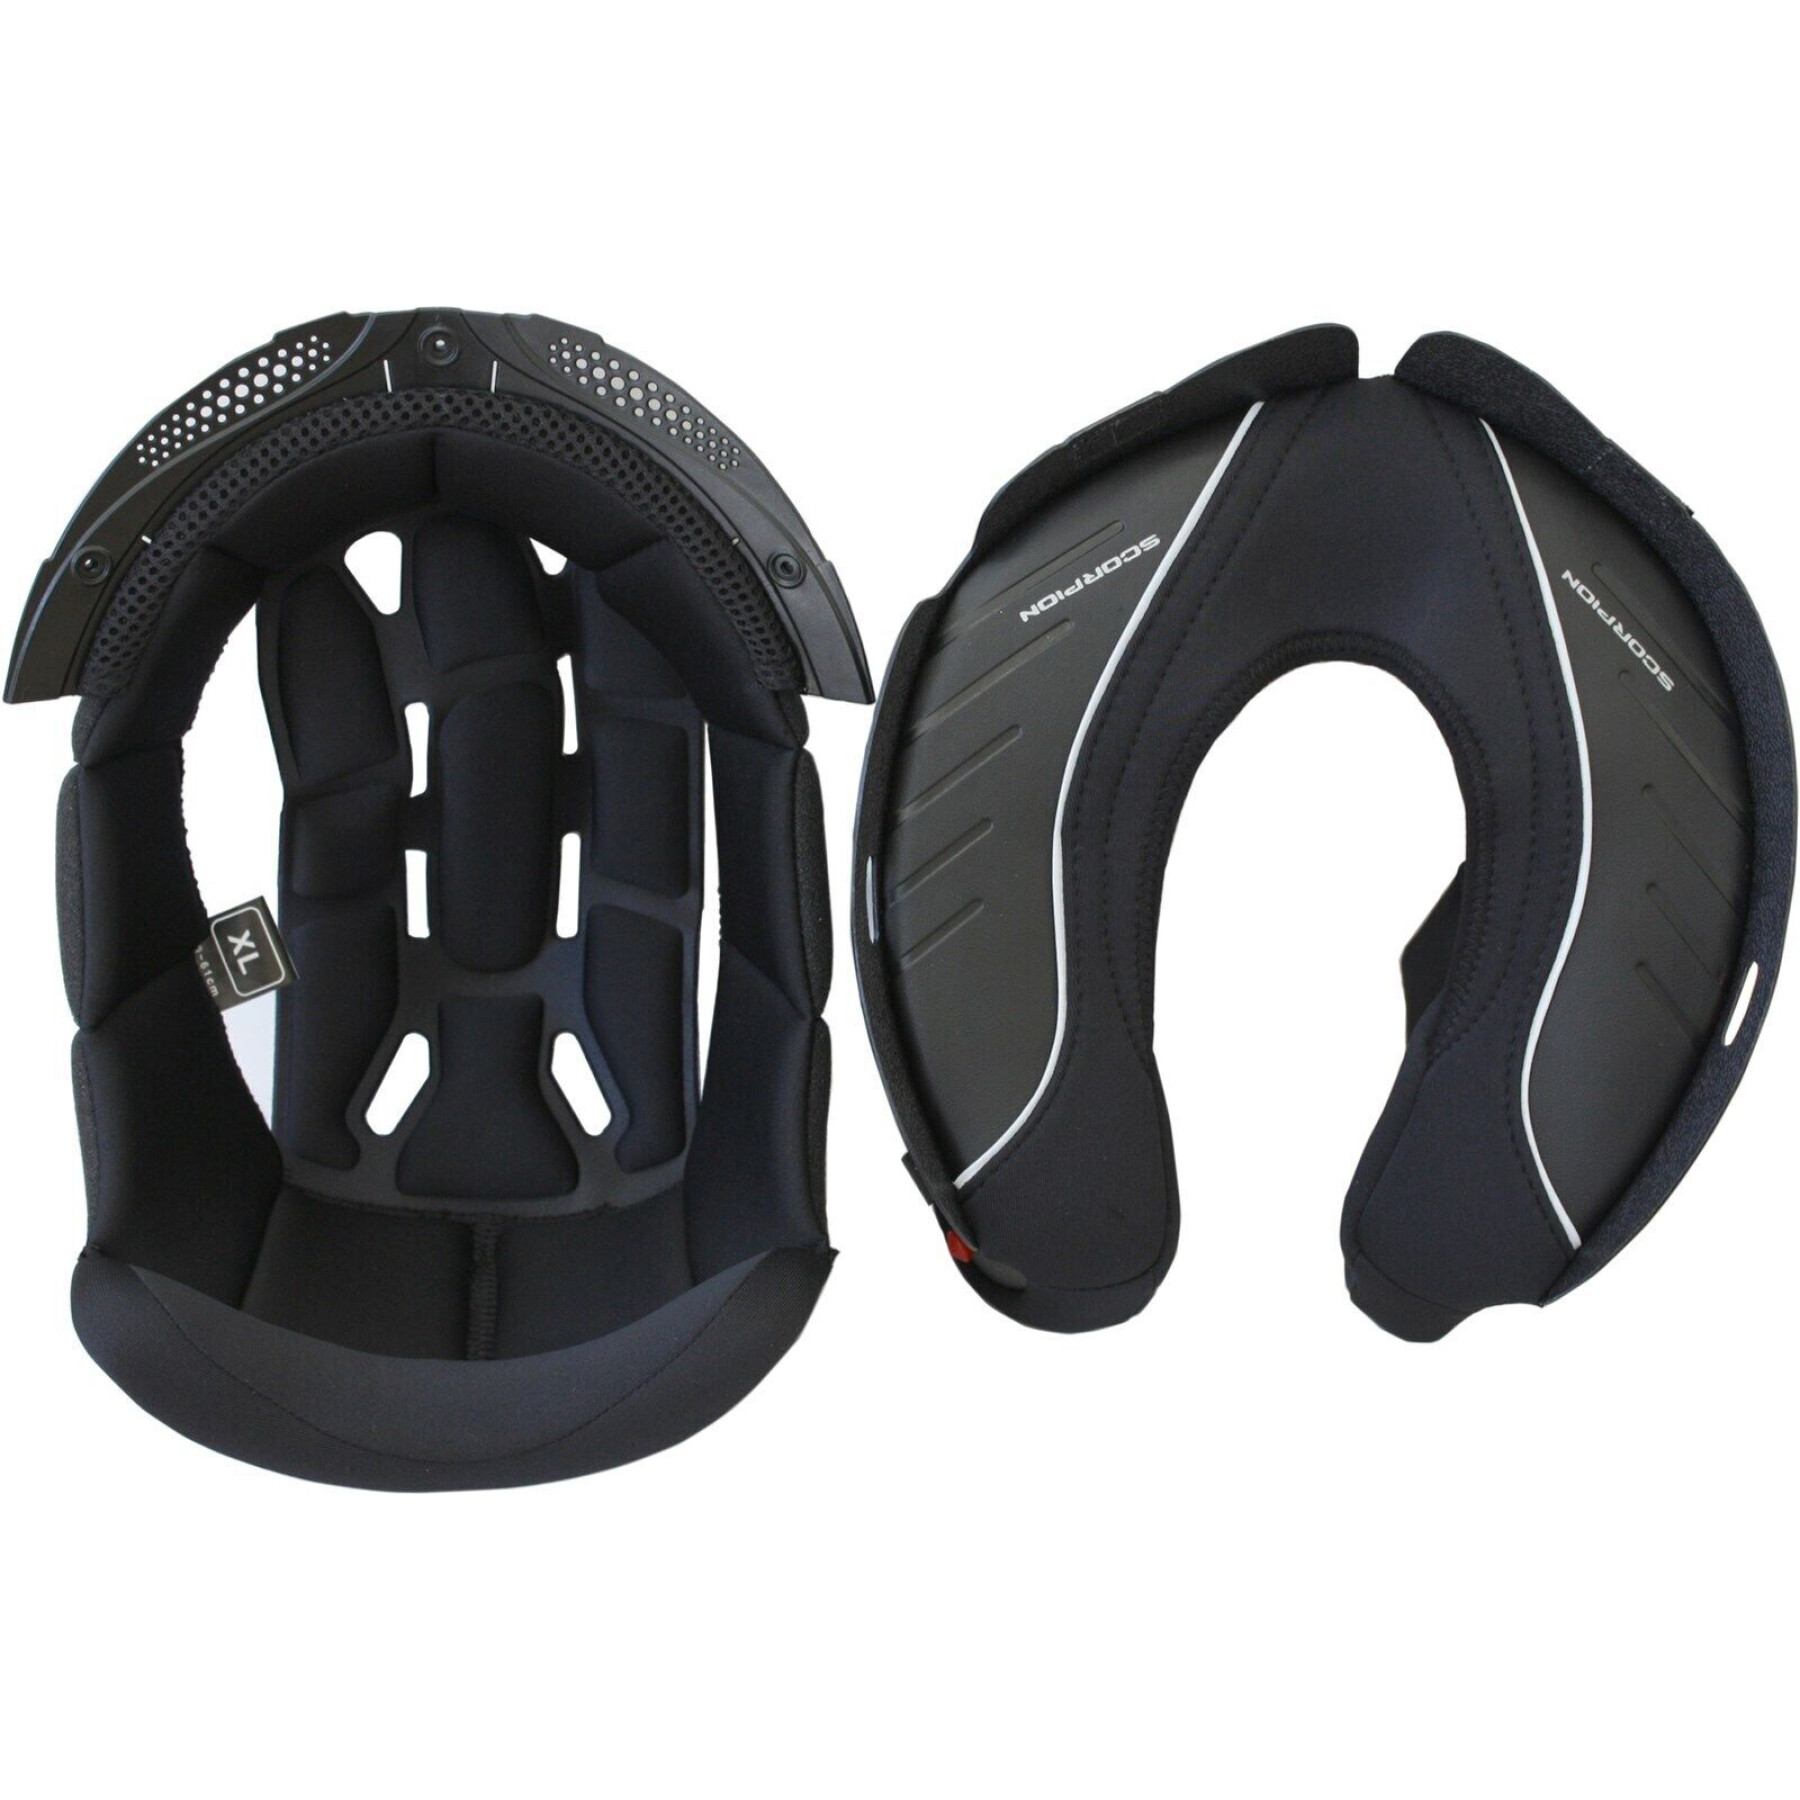 Forro de capacete de motociclista Scorpion Exo-930 Evo/Adx-2